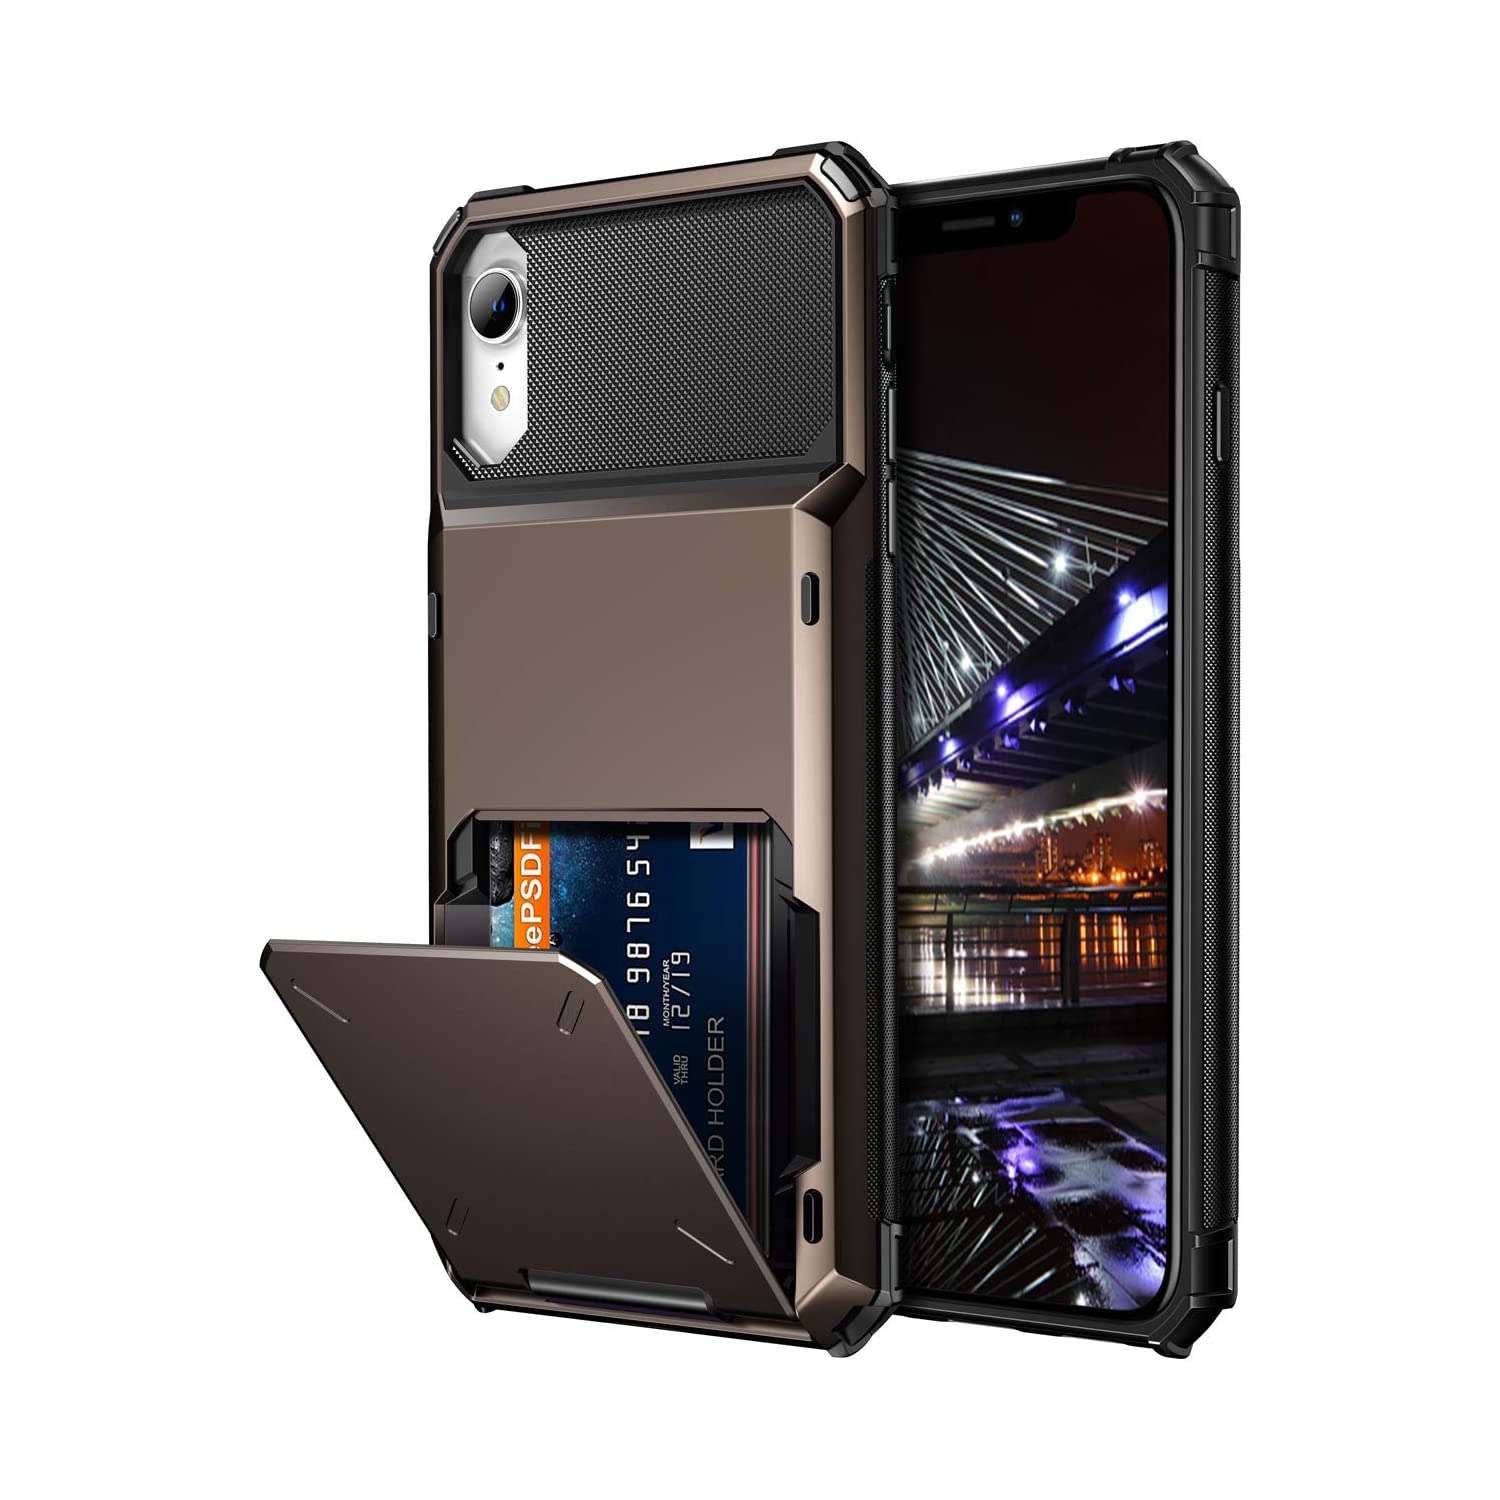 Cover for iPhone XR Case Wallet 4-Card Holder Slot Flip Door Hidden Back Pocket Scratch-Proof Dual Layer Hybrid